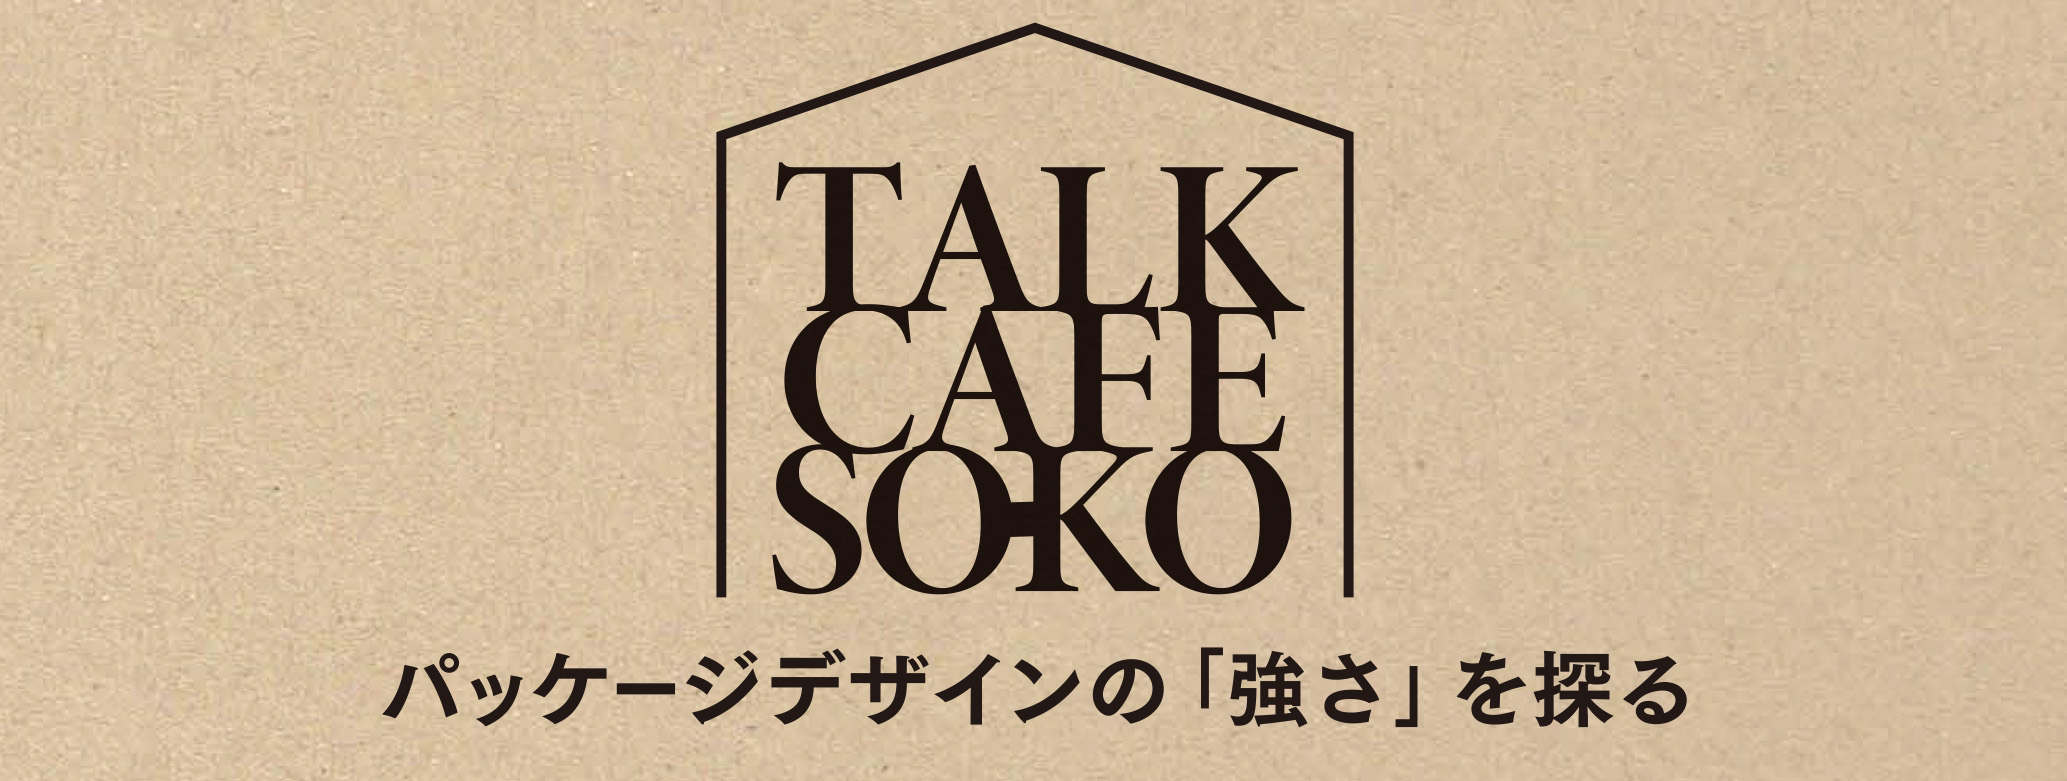 TALK CAFE SO-KO パッケージデザインの「強さ」を探るのイメージ